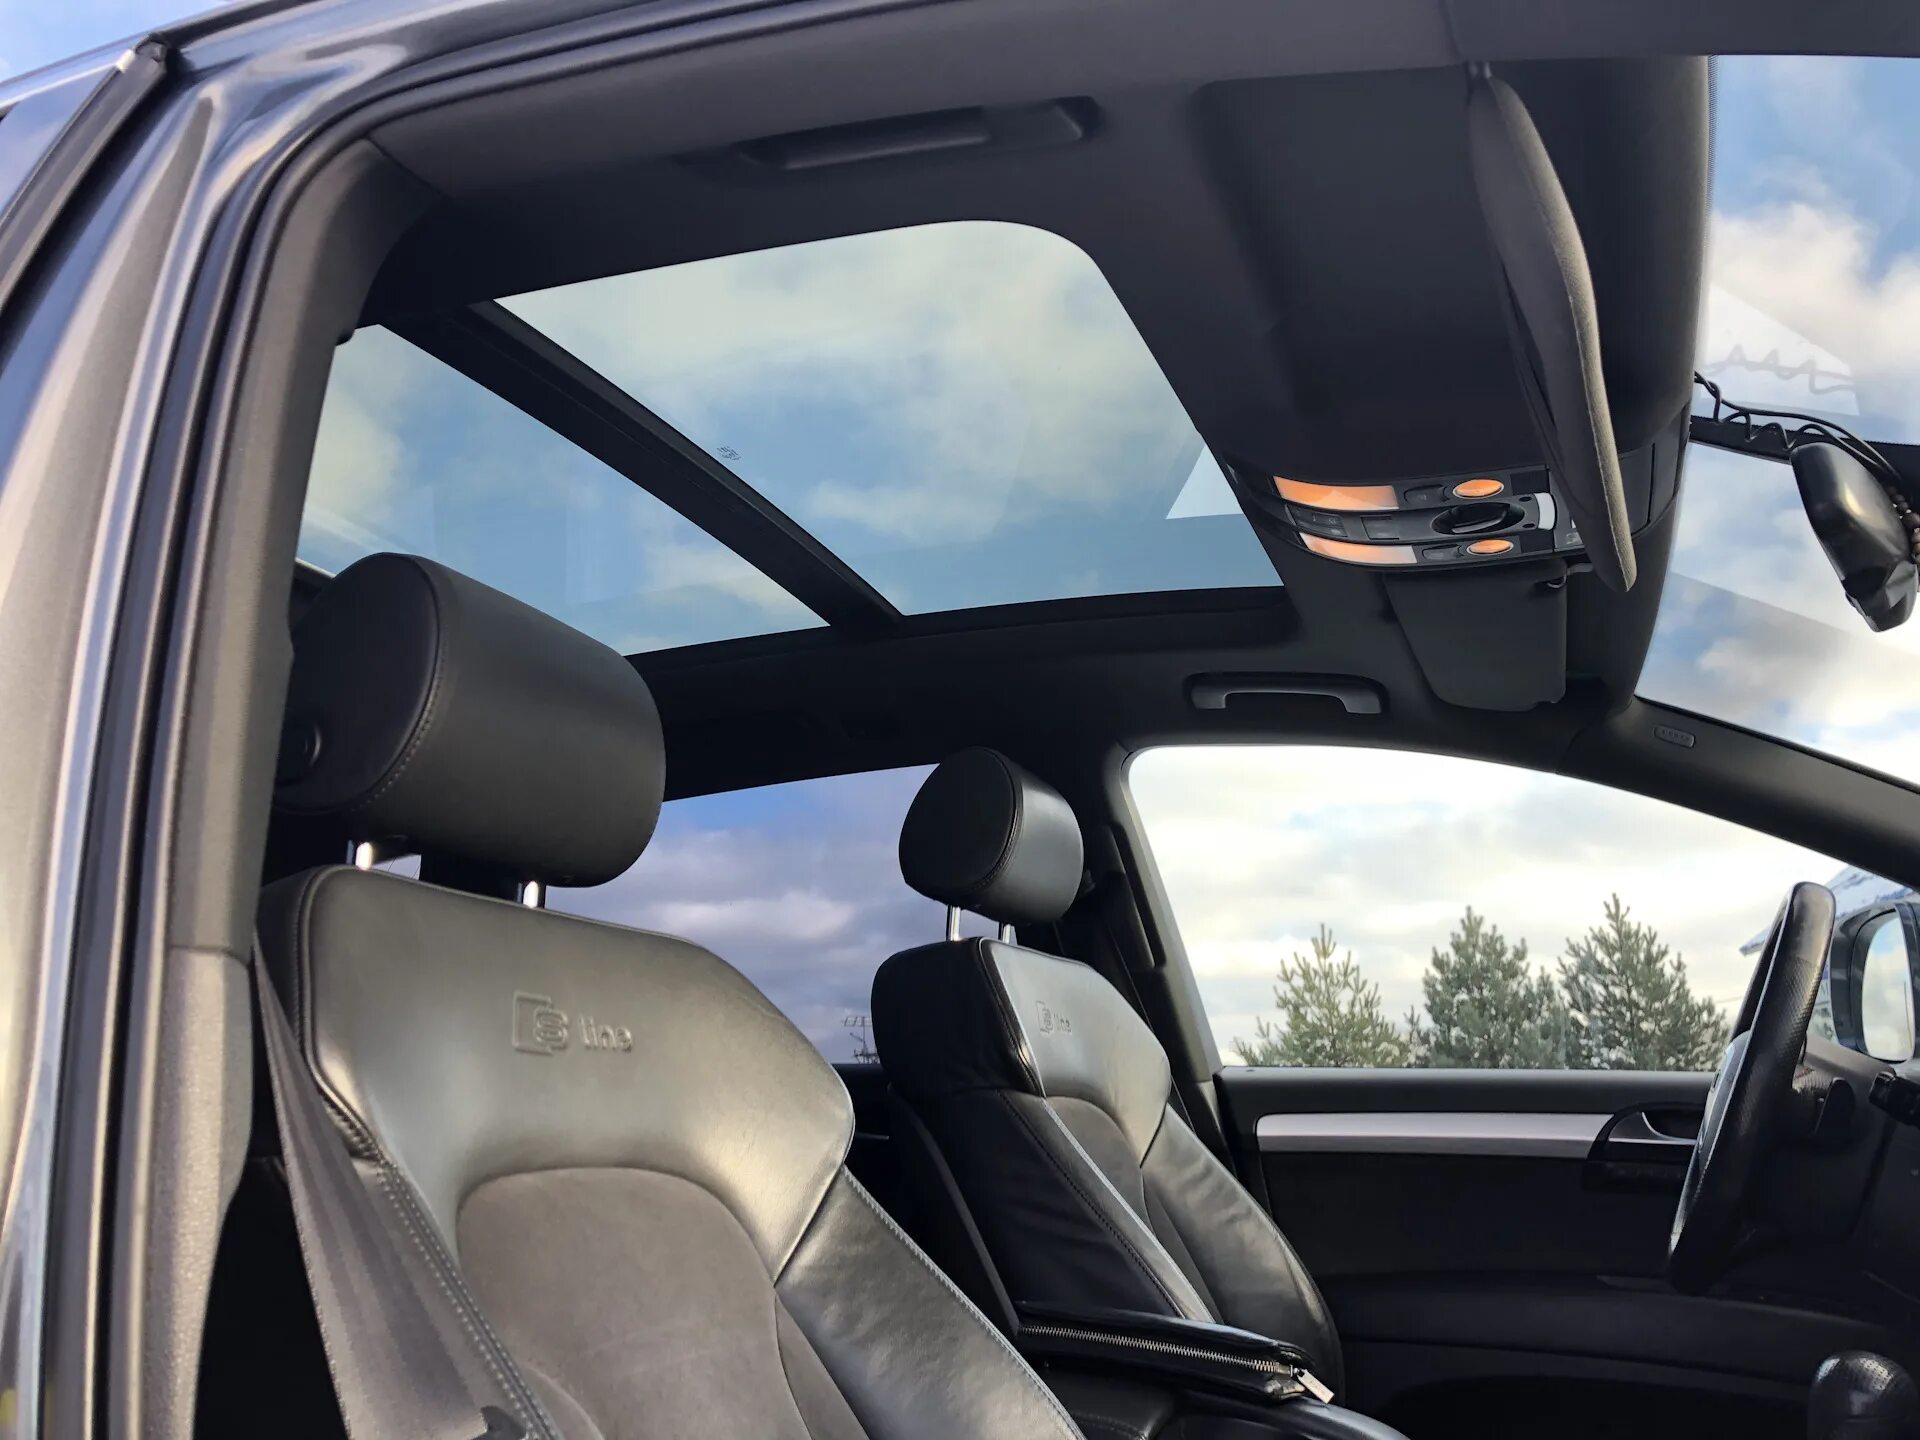 Лобовое стекло а6. Audi q7 2020 панорамная крыша. Ауди q3 с панорамной крышей. Ауди с панорамной крышей q7. Ауди ку 5 с панорамной крышей.